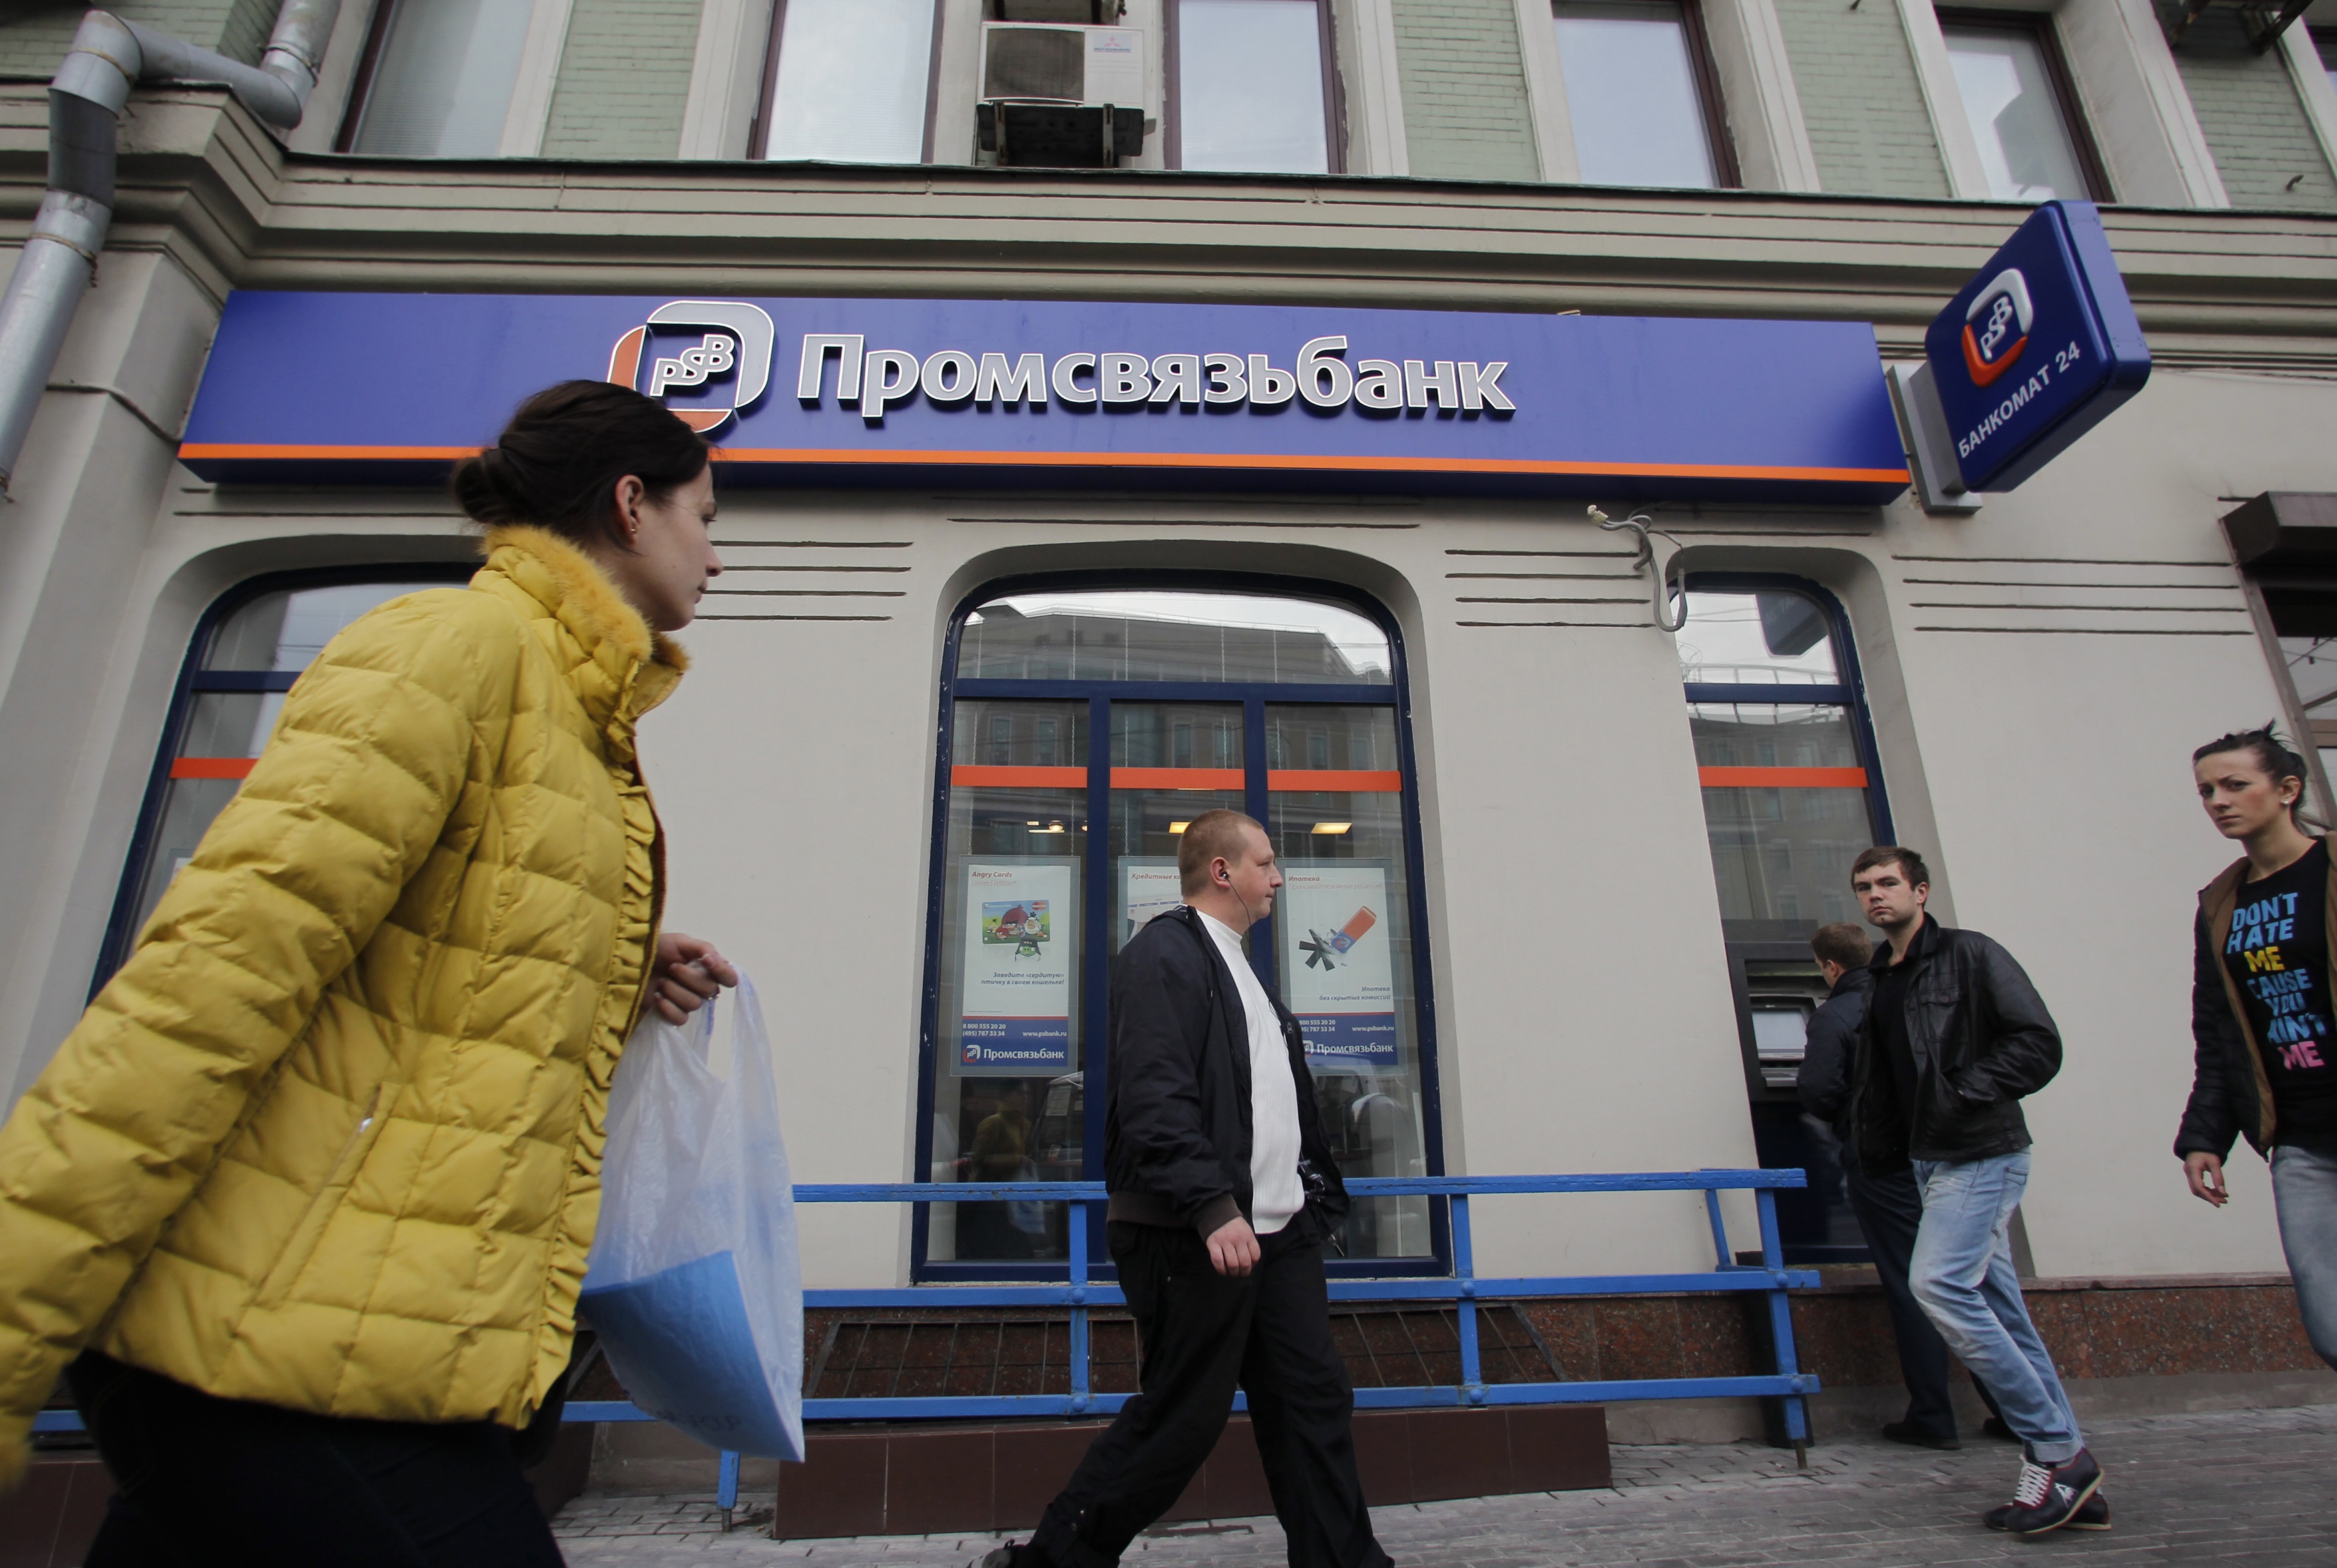 برومسفياز بنك (Promsvyazbank) (رويترز)